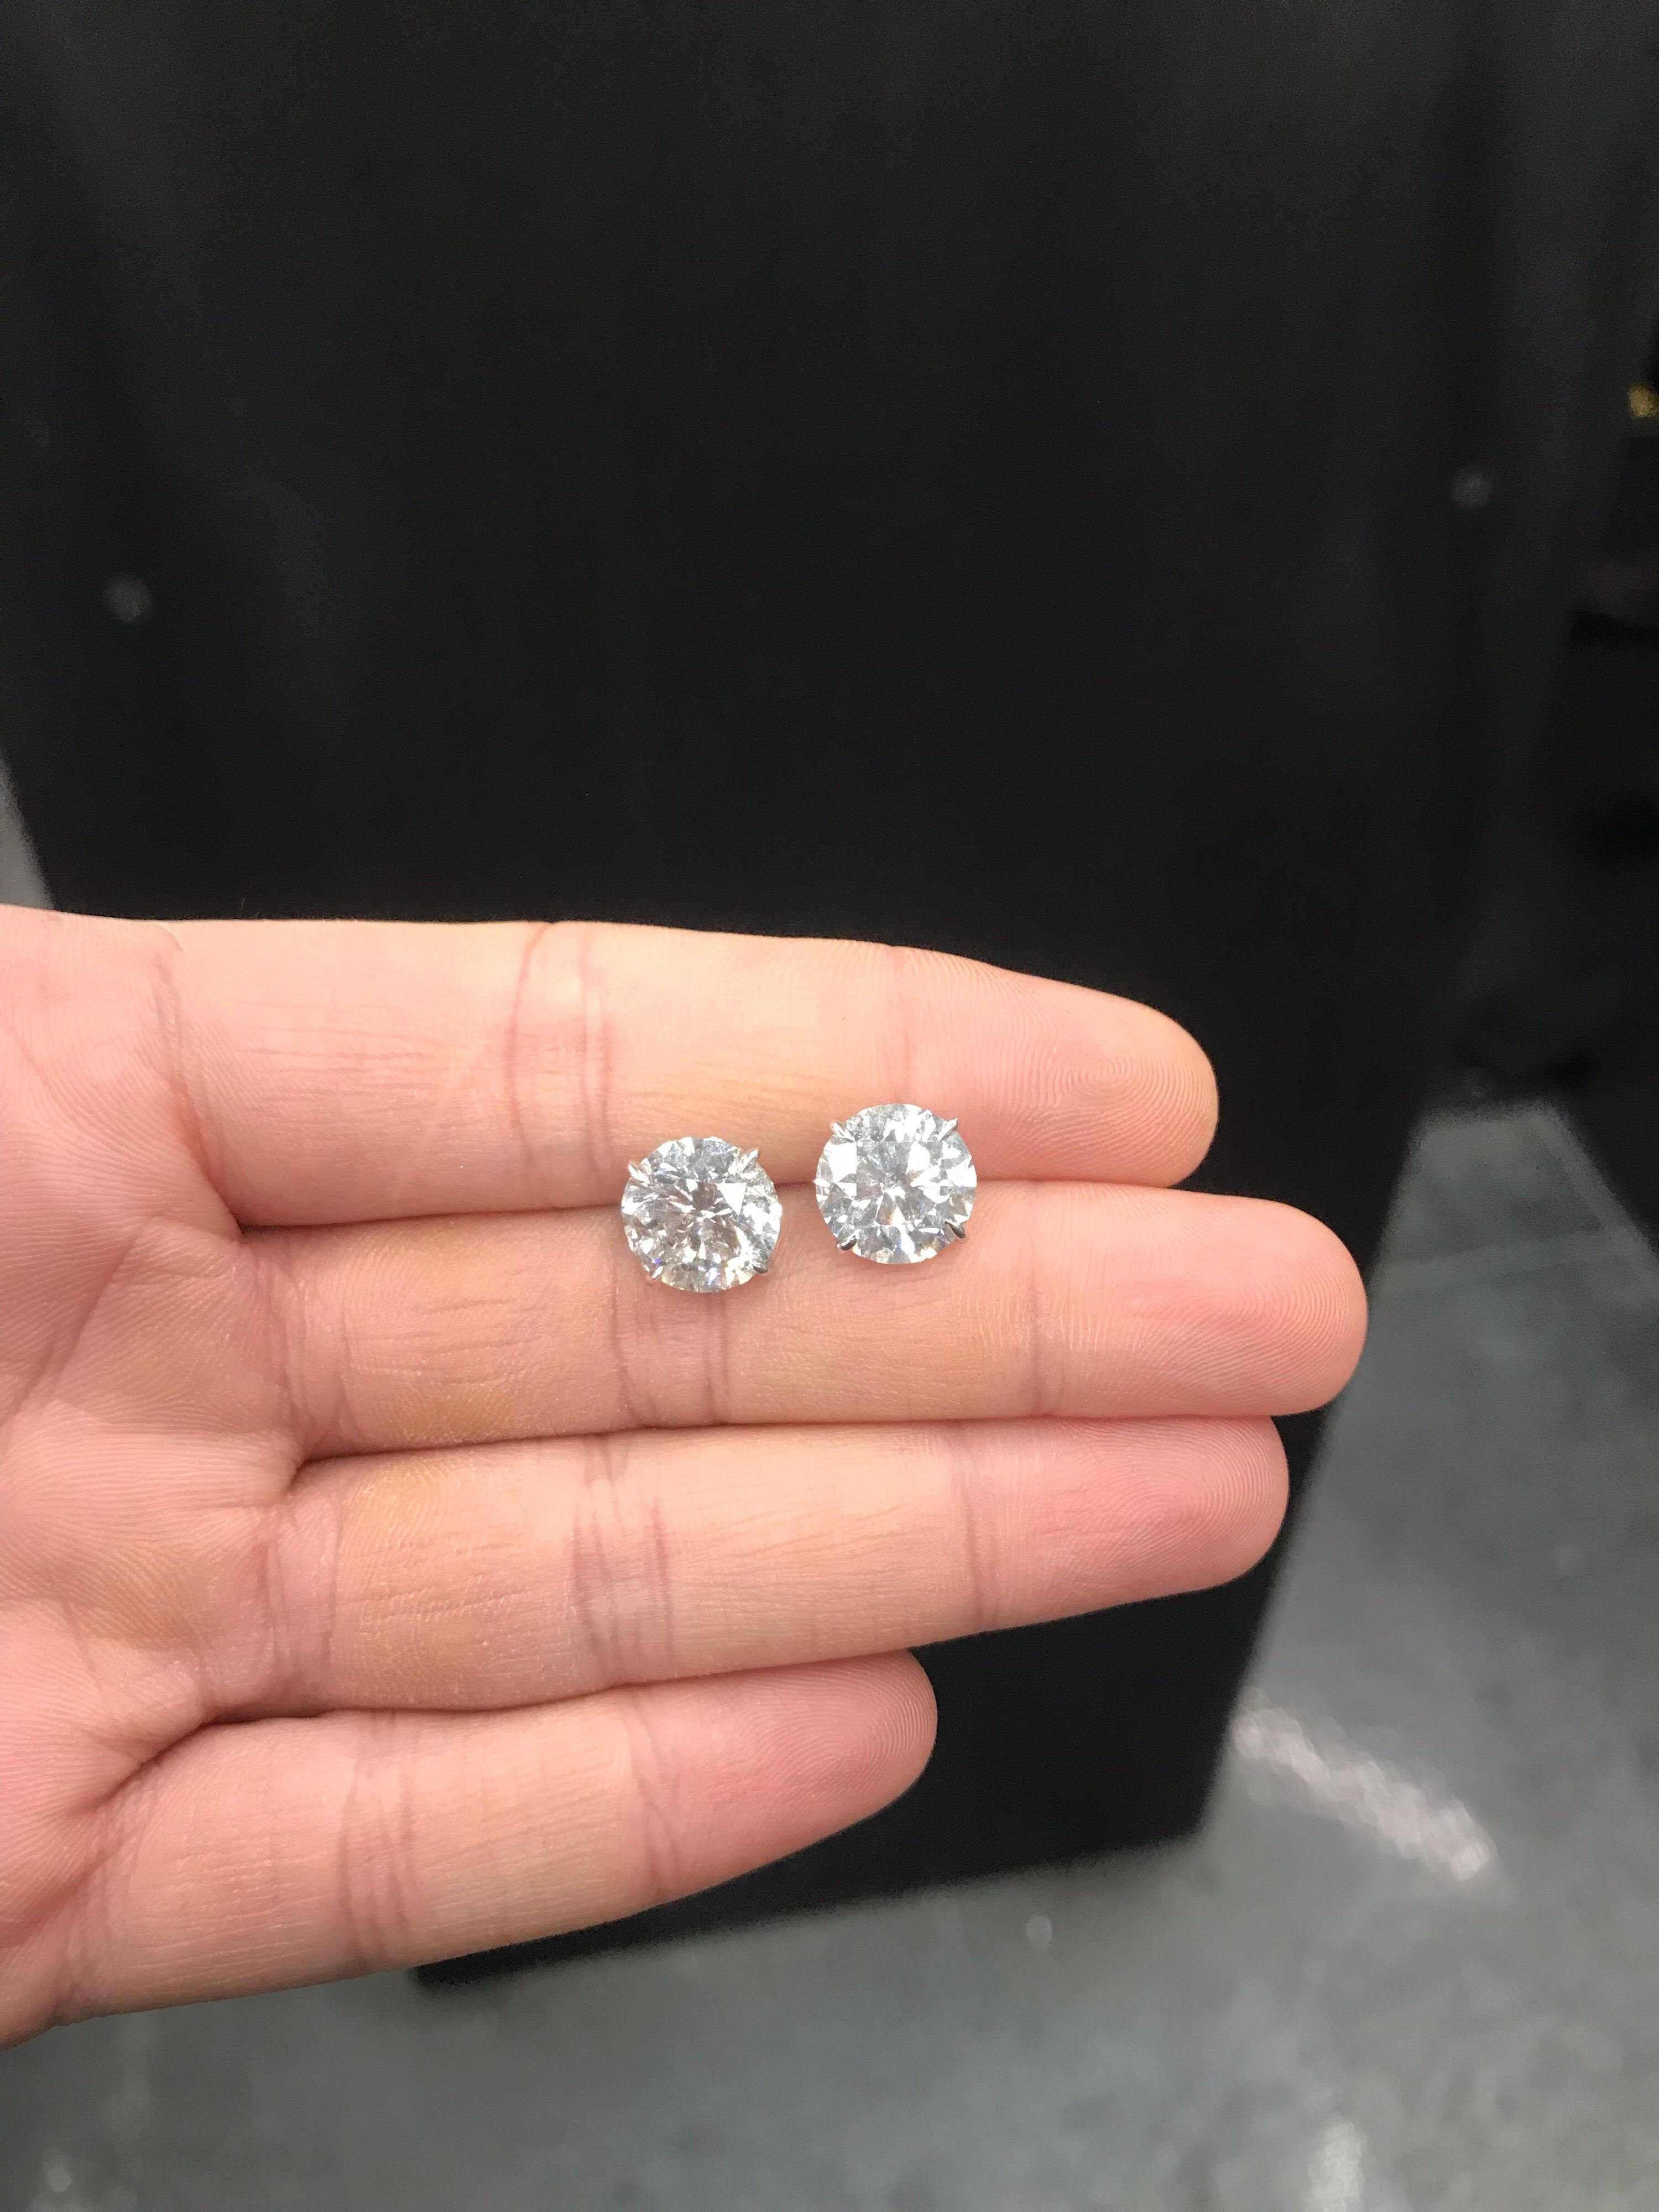 4 ct diamond stud earrings